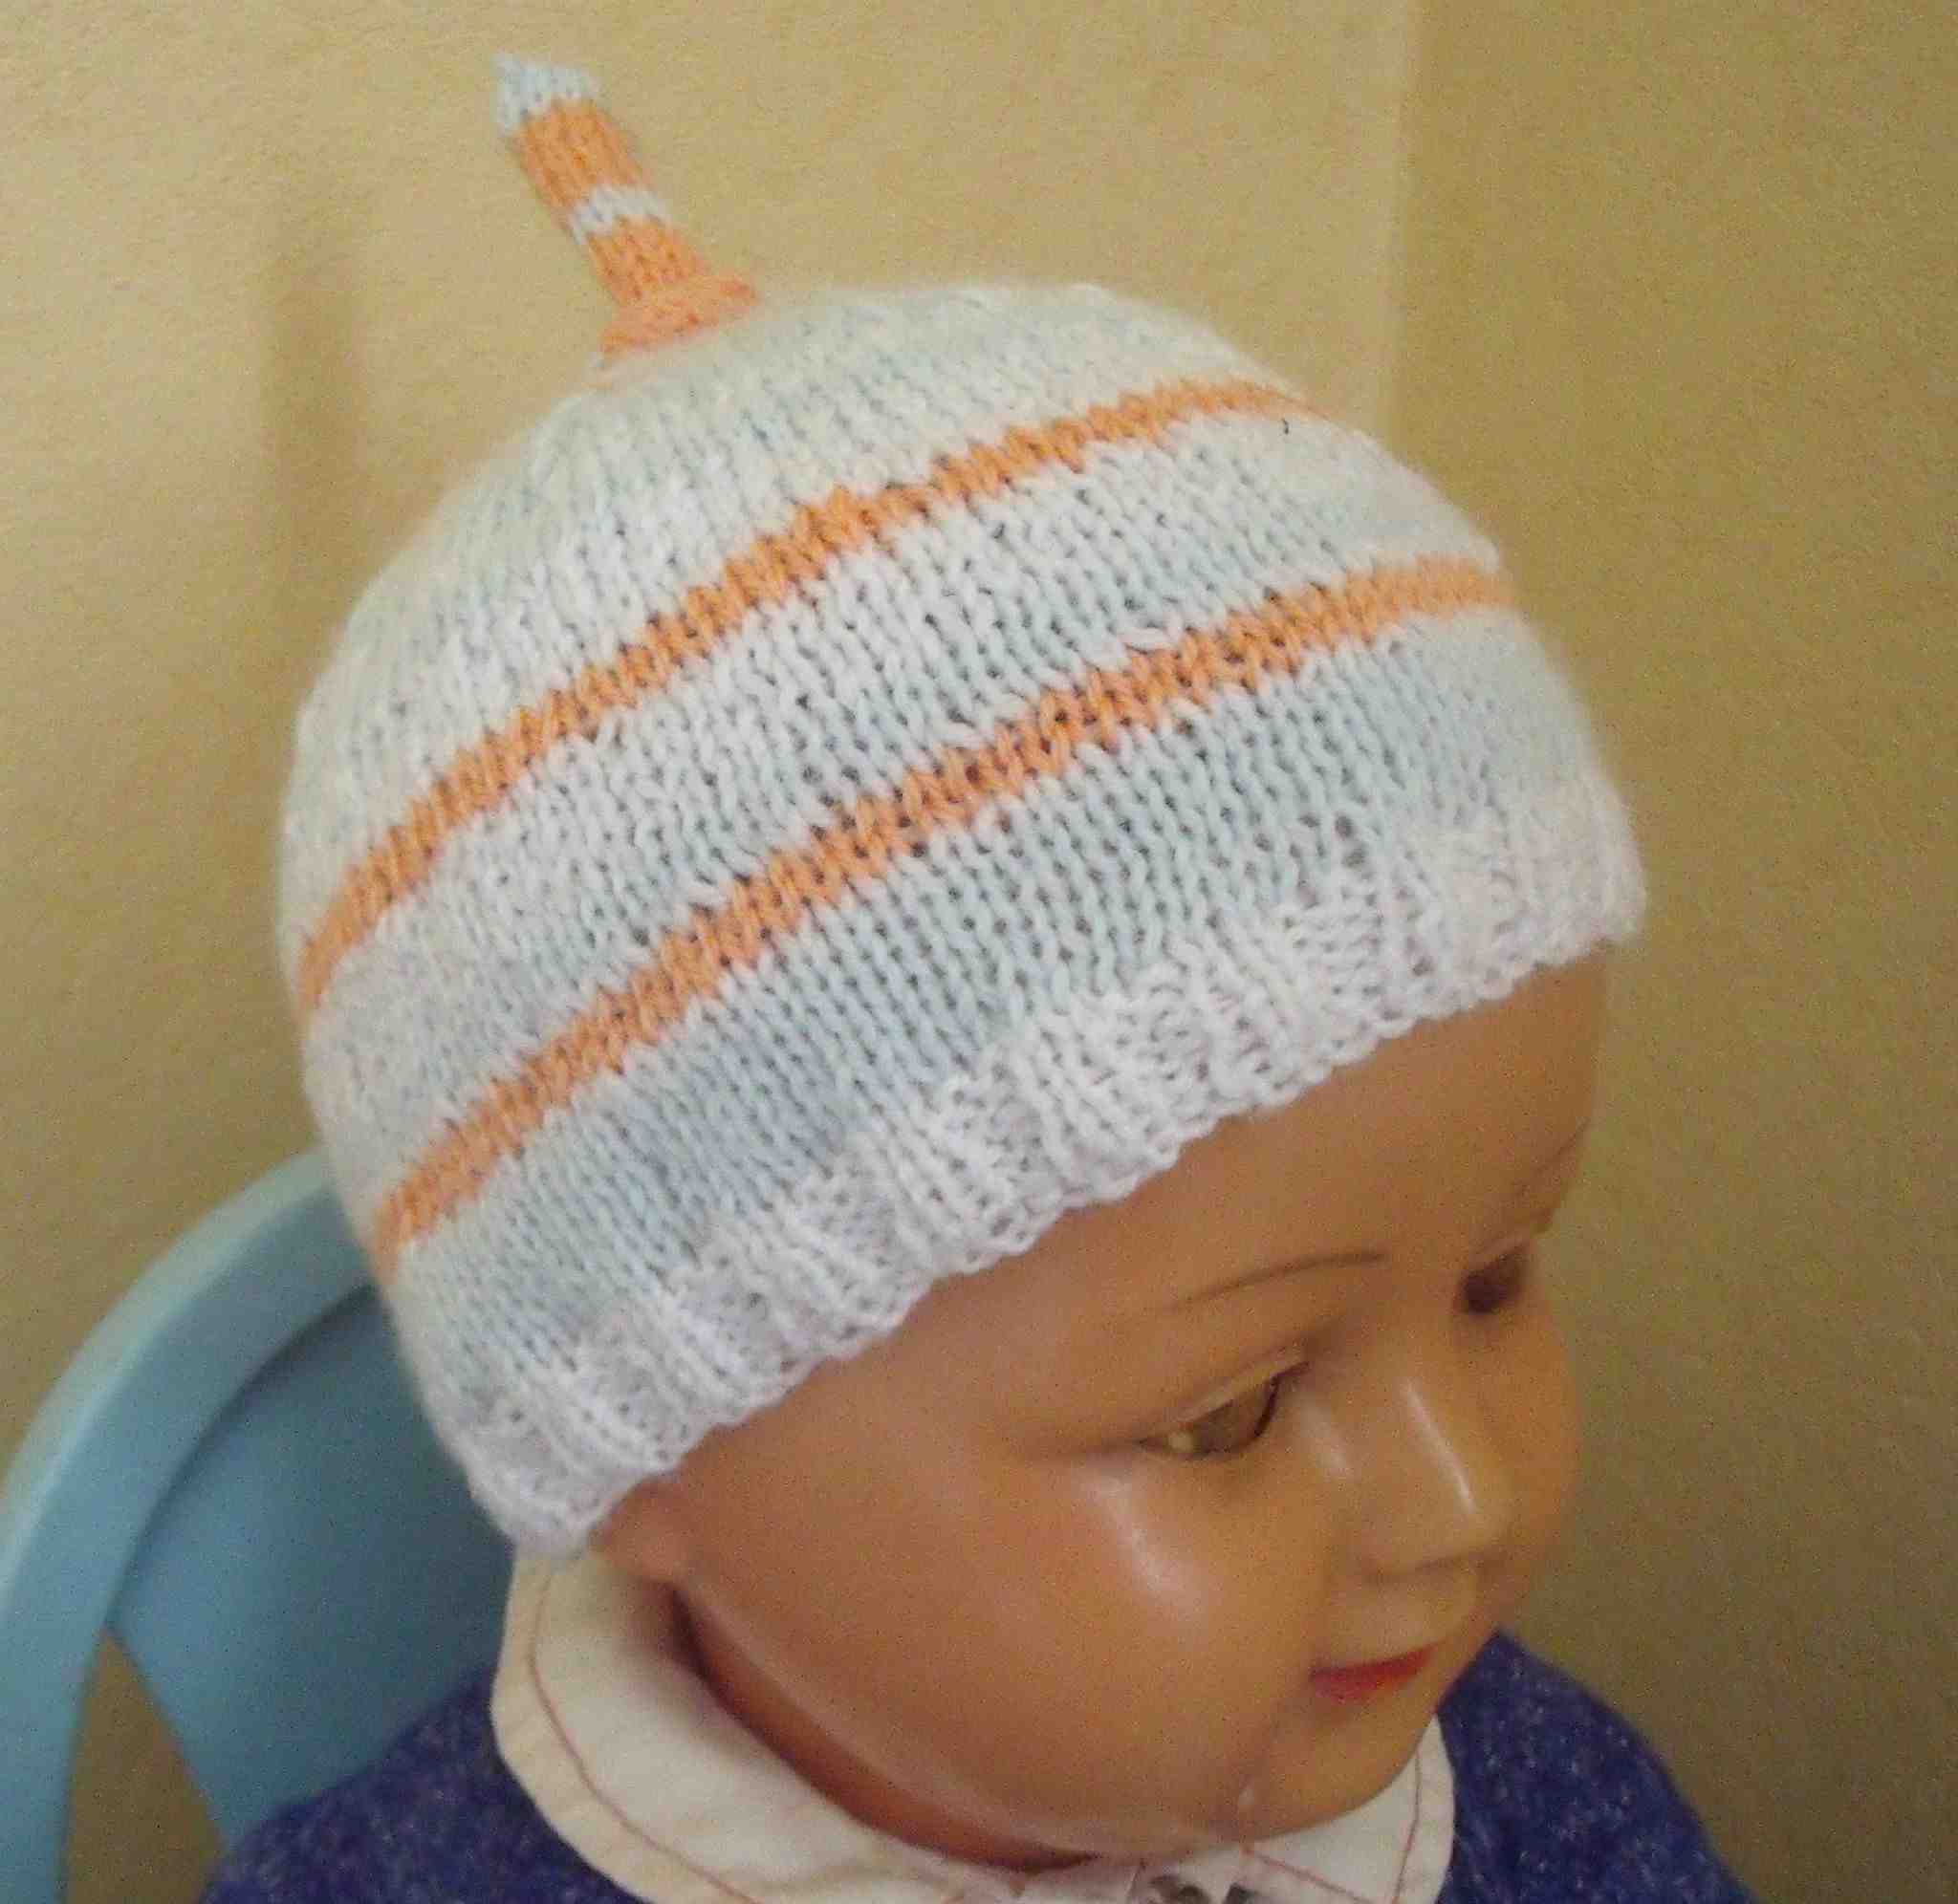 Comment tricoter un bonnet pour enfants?